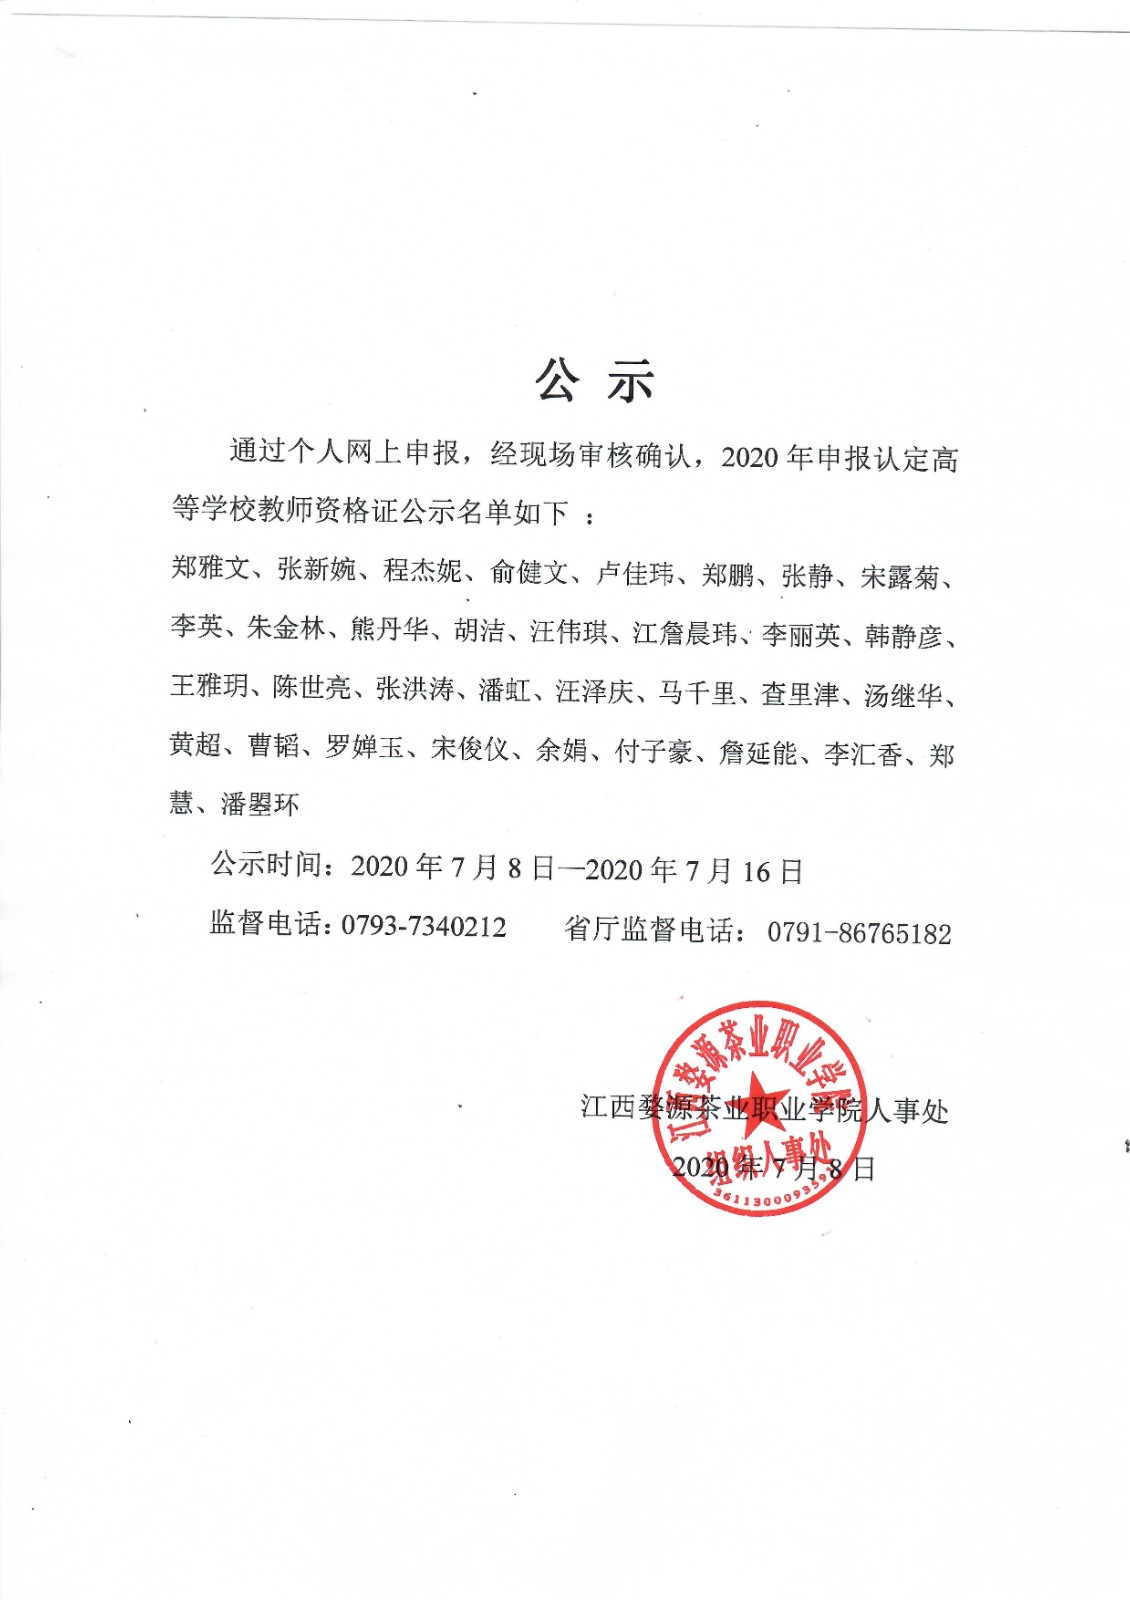 江西婺源茶业职业学院关于2020年申报认定高等学校教师资格证名单公示